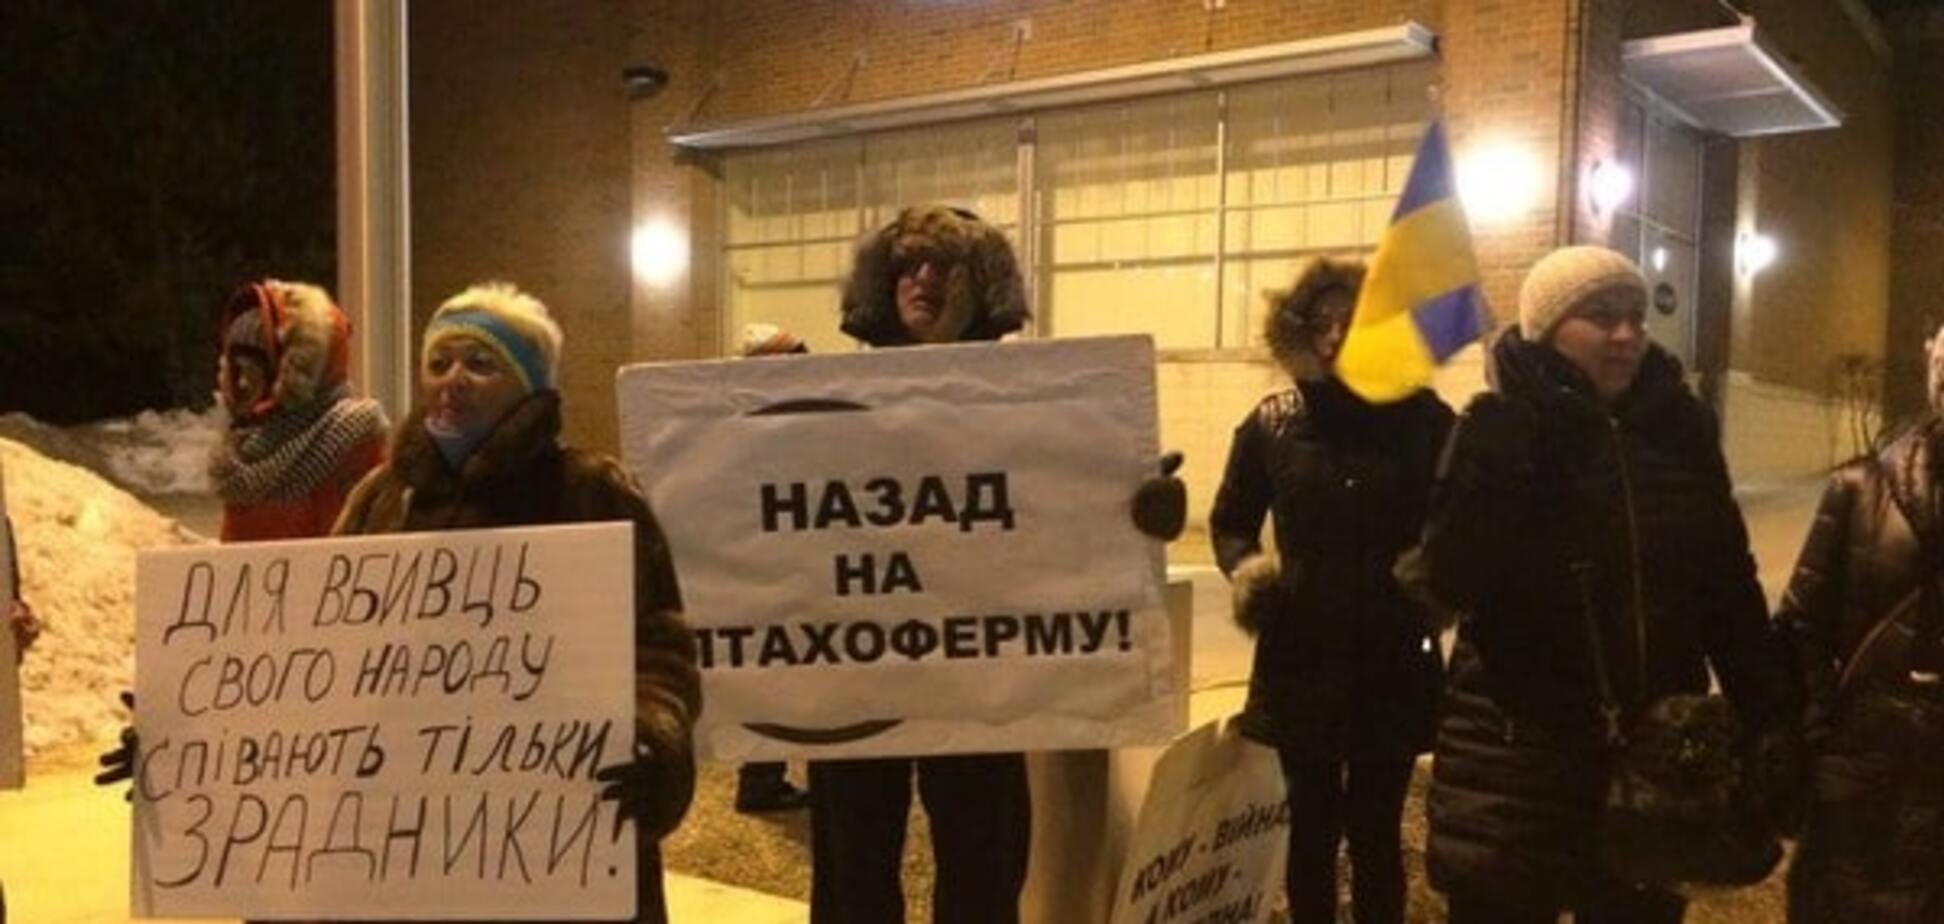 'Назад на птахоферму': українці бойкотували концерт Ані Лорак у Чикаго. Фотофакт